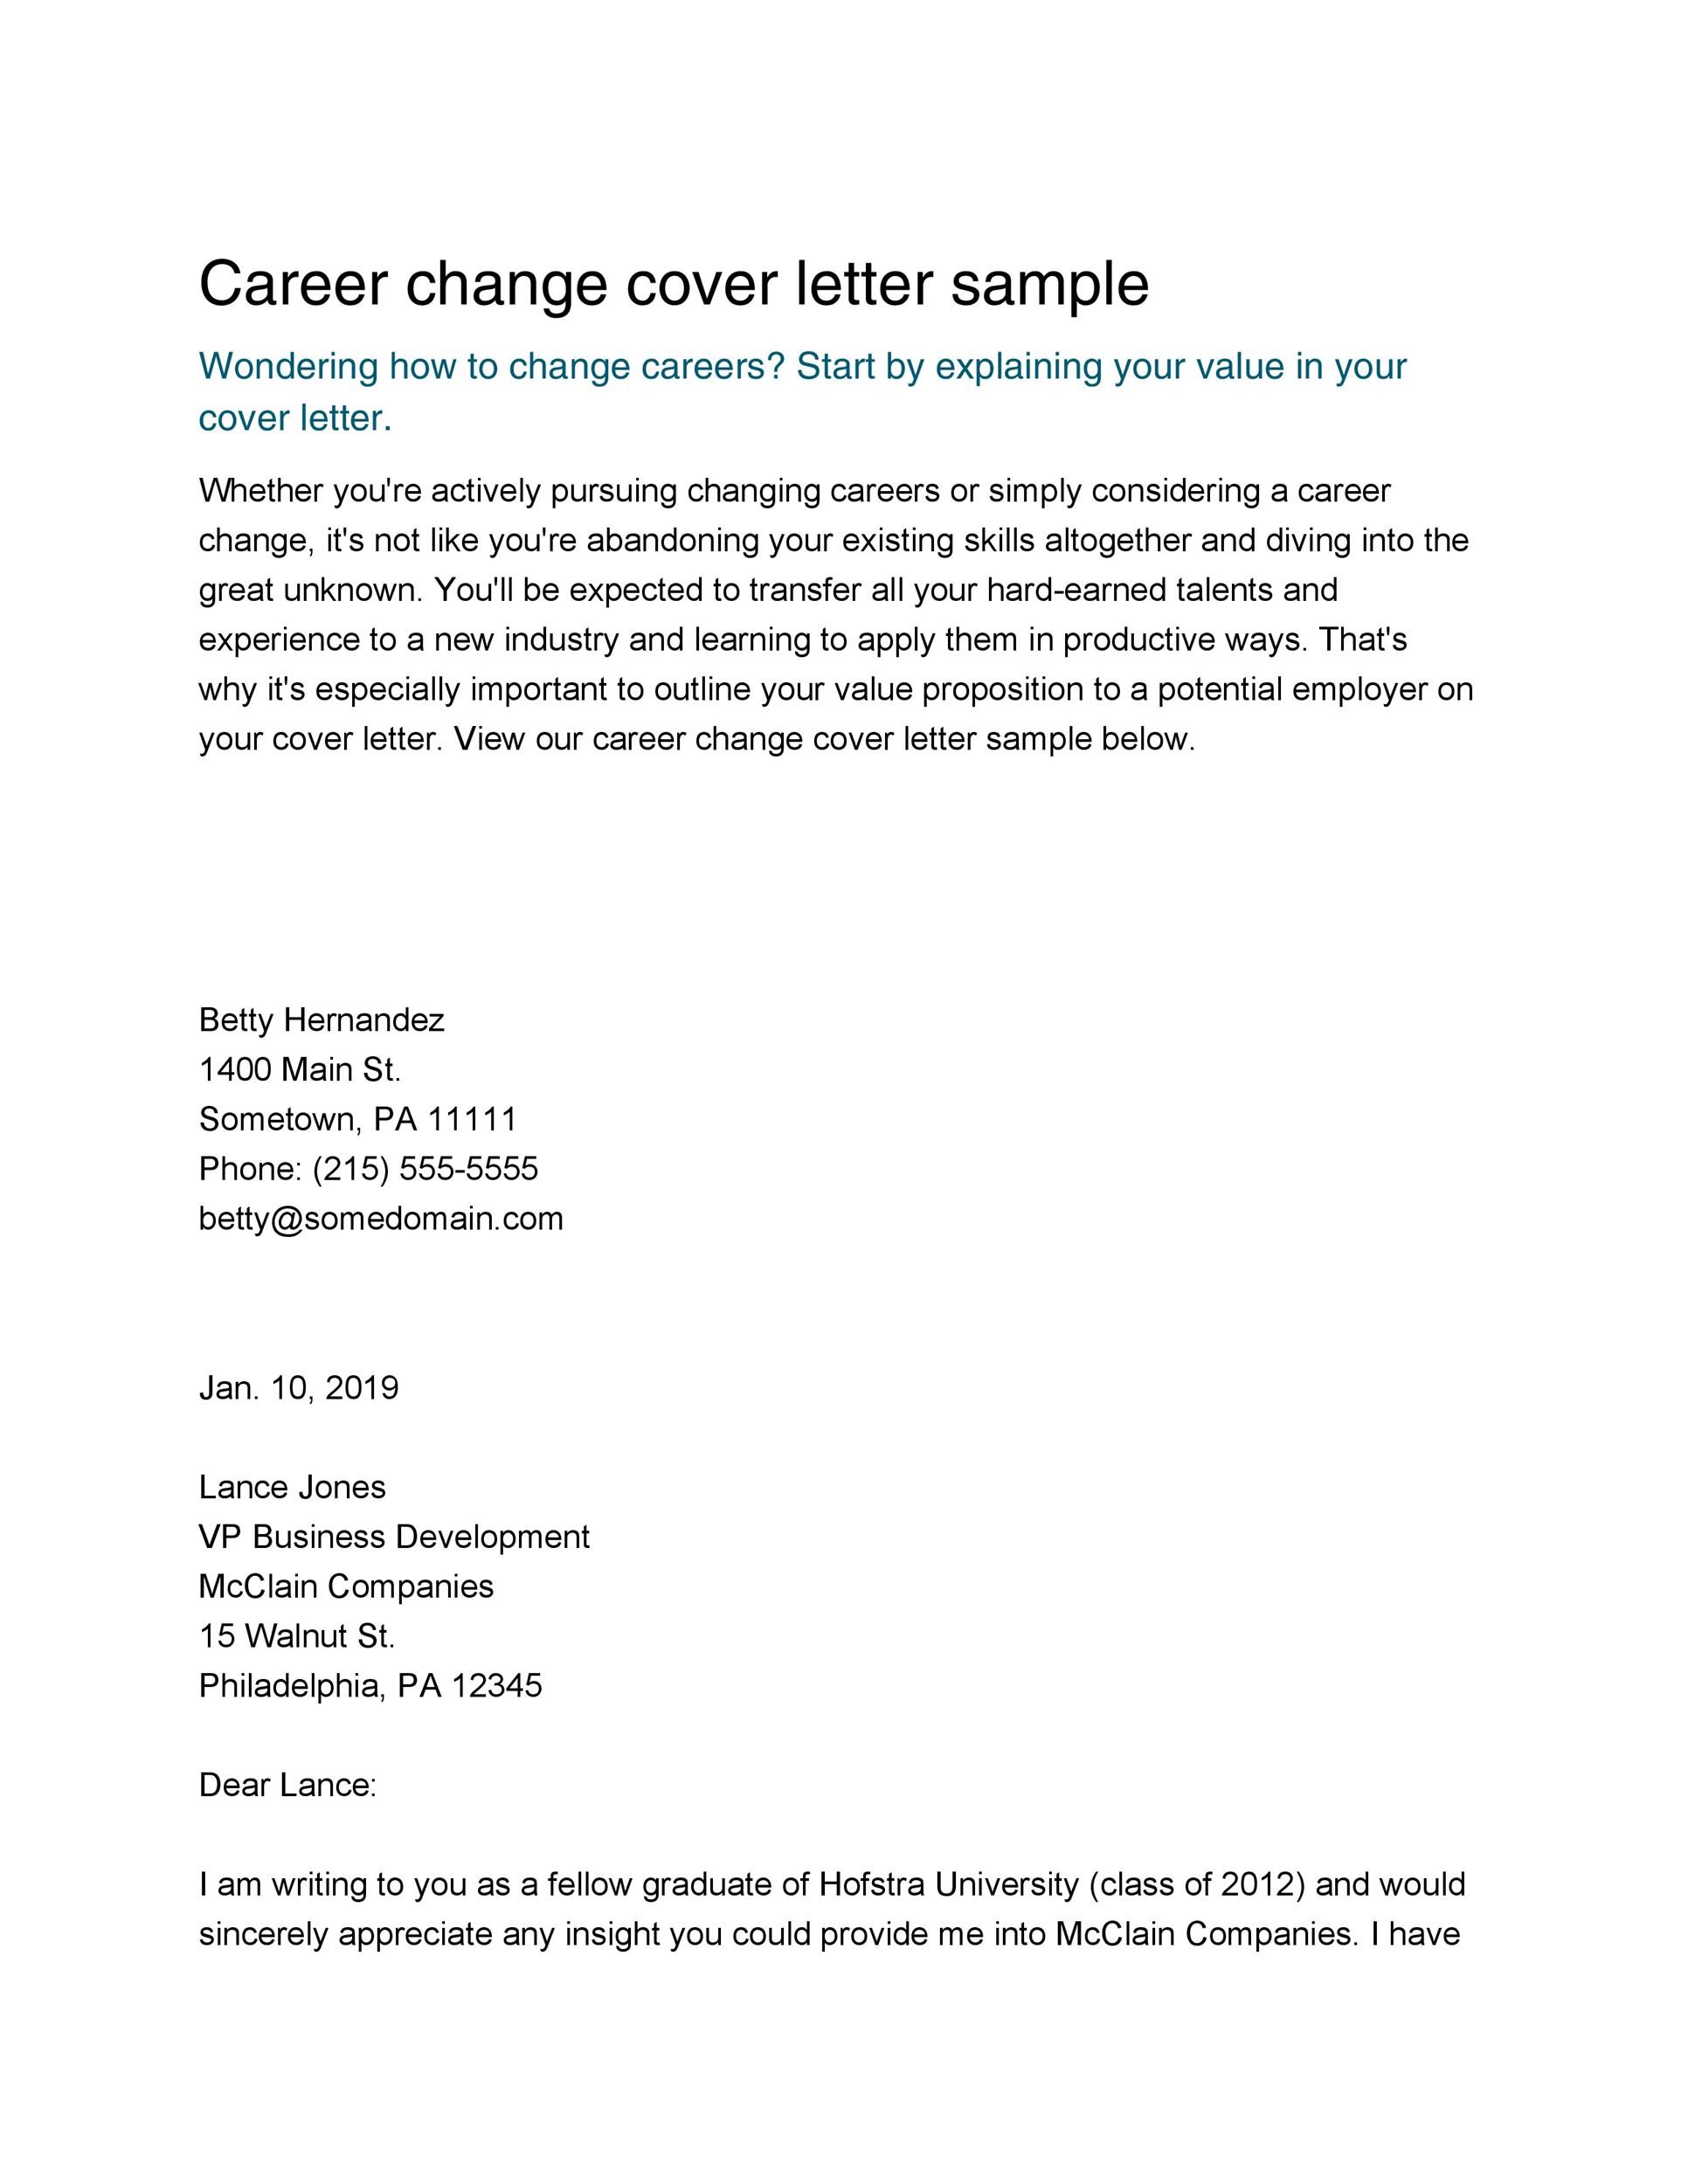 teaching career change cover letter